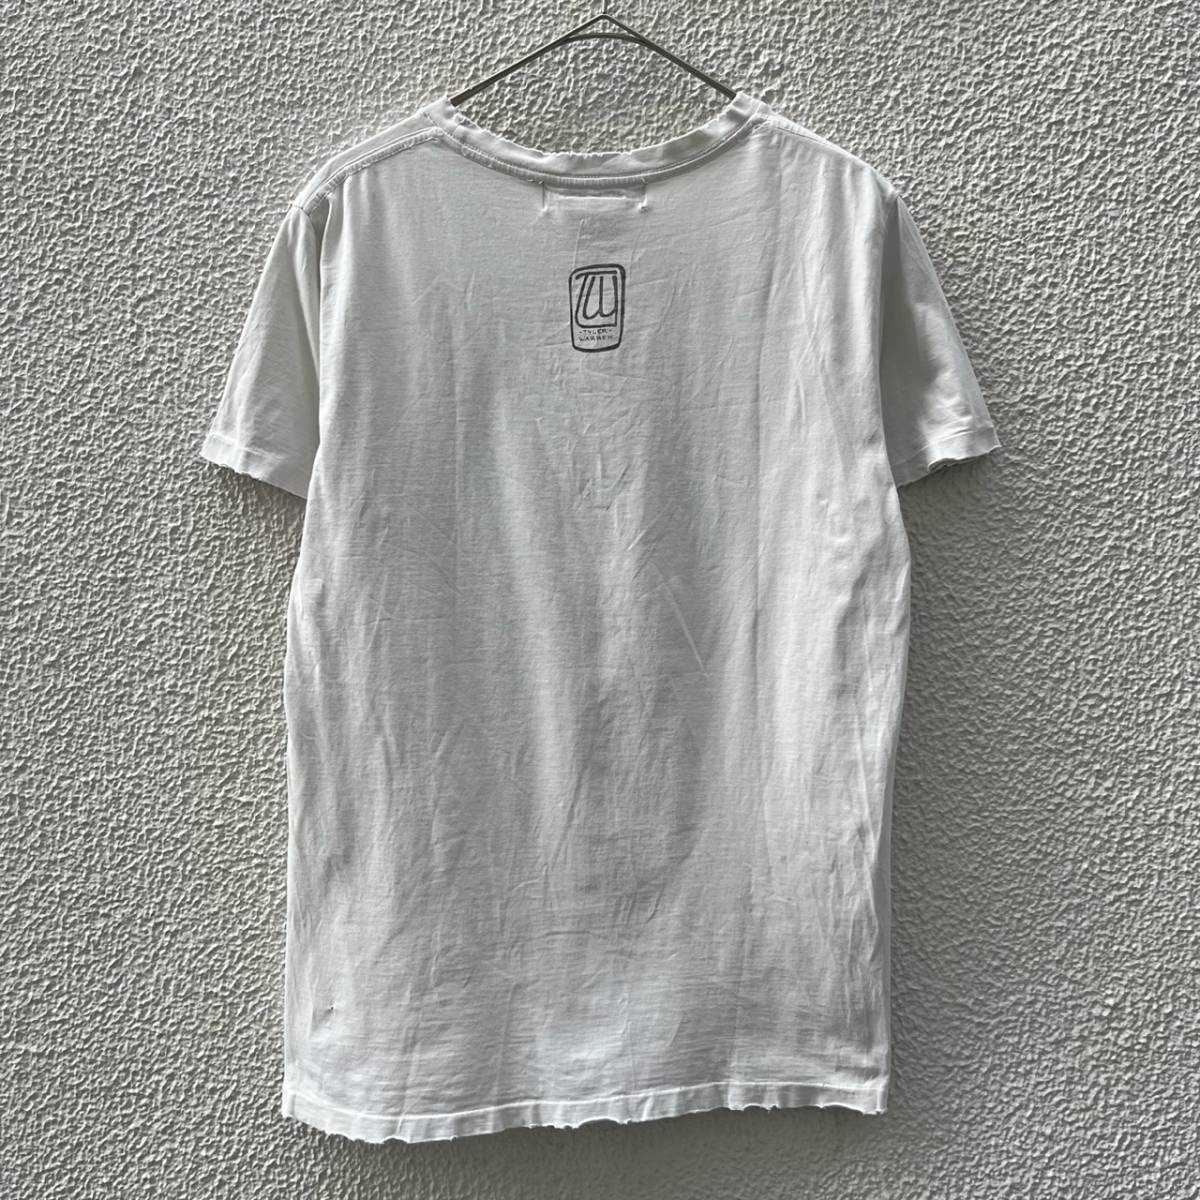 REMI RELIEF レミレリーフ Sサイズ Tシャツ 半袖 プリント カラベラ ホワイト